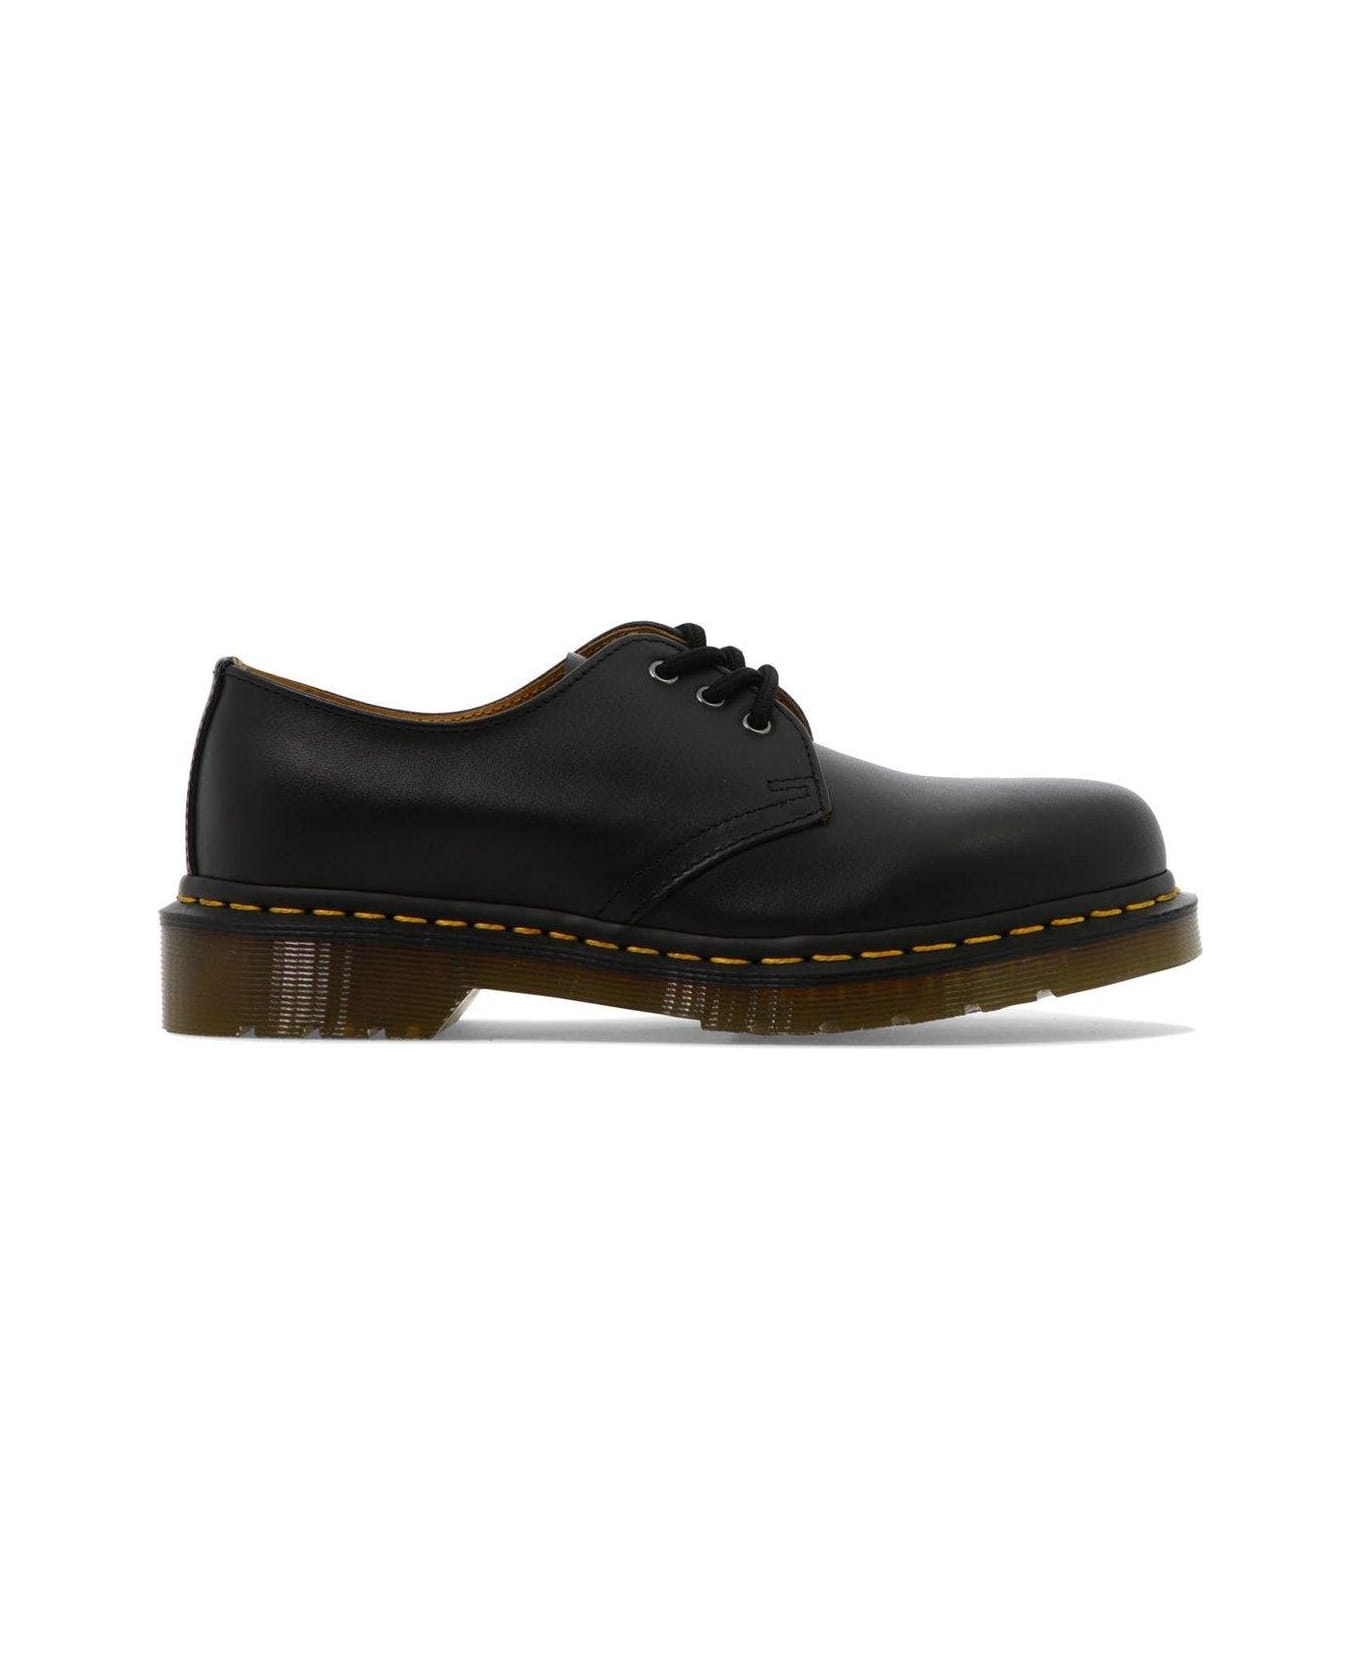 Dr. Martens 1461 Lace Up Shoes - Black フラットシューズ